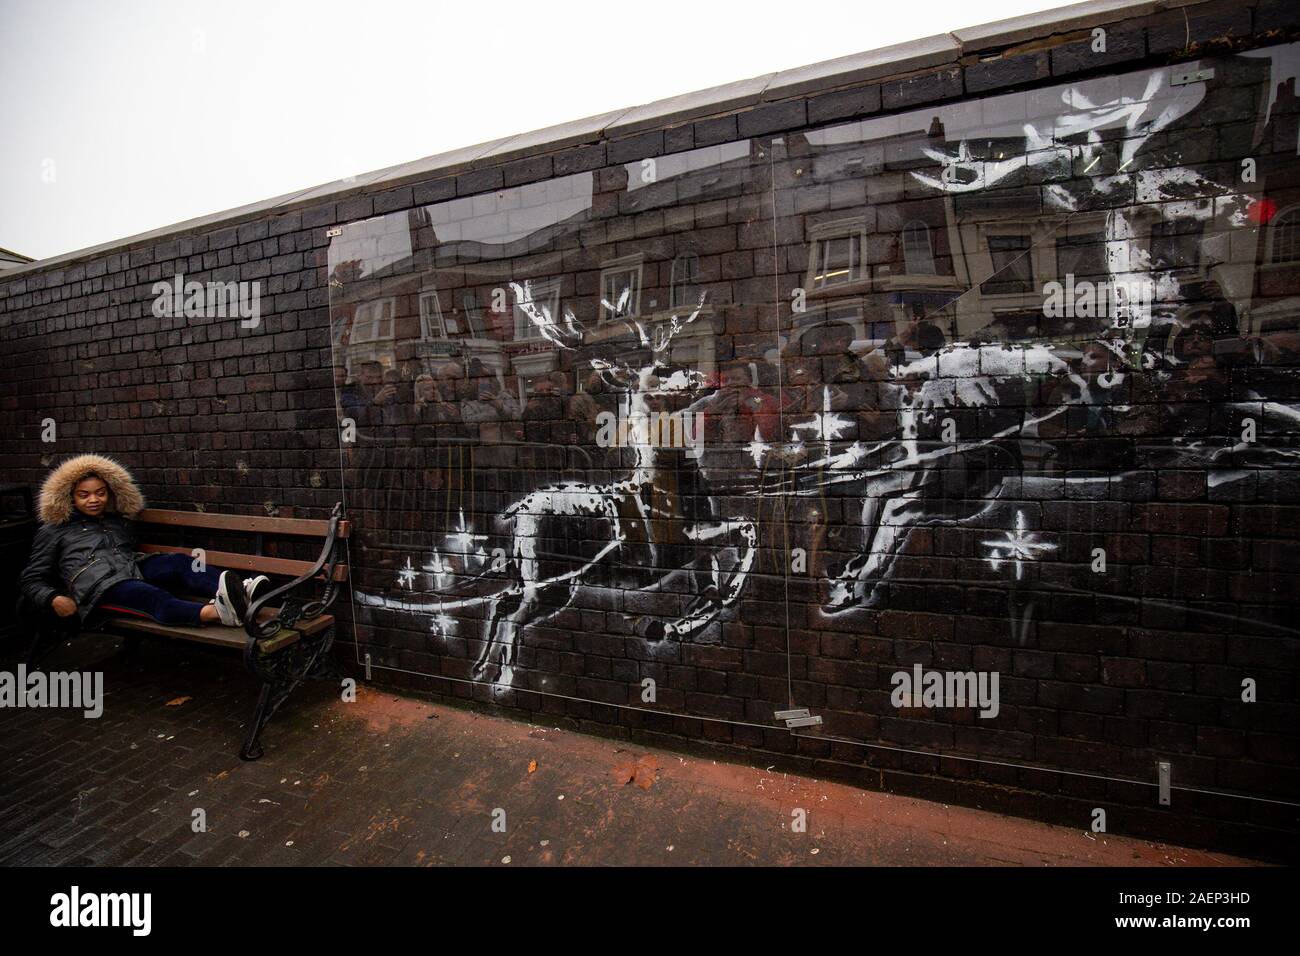 Draps perspex ouvriers pour protéger une nouvelle illustration Banksy à Birmingham's Jewellery Quarter après qu'elle a été vandalisée jours après son apparition. La murale représentant deux rennes peints sur un mur de briques qui semble tirer le long d'un banc. Banque D'Images